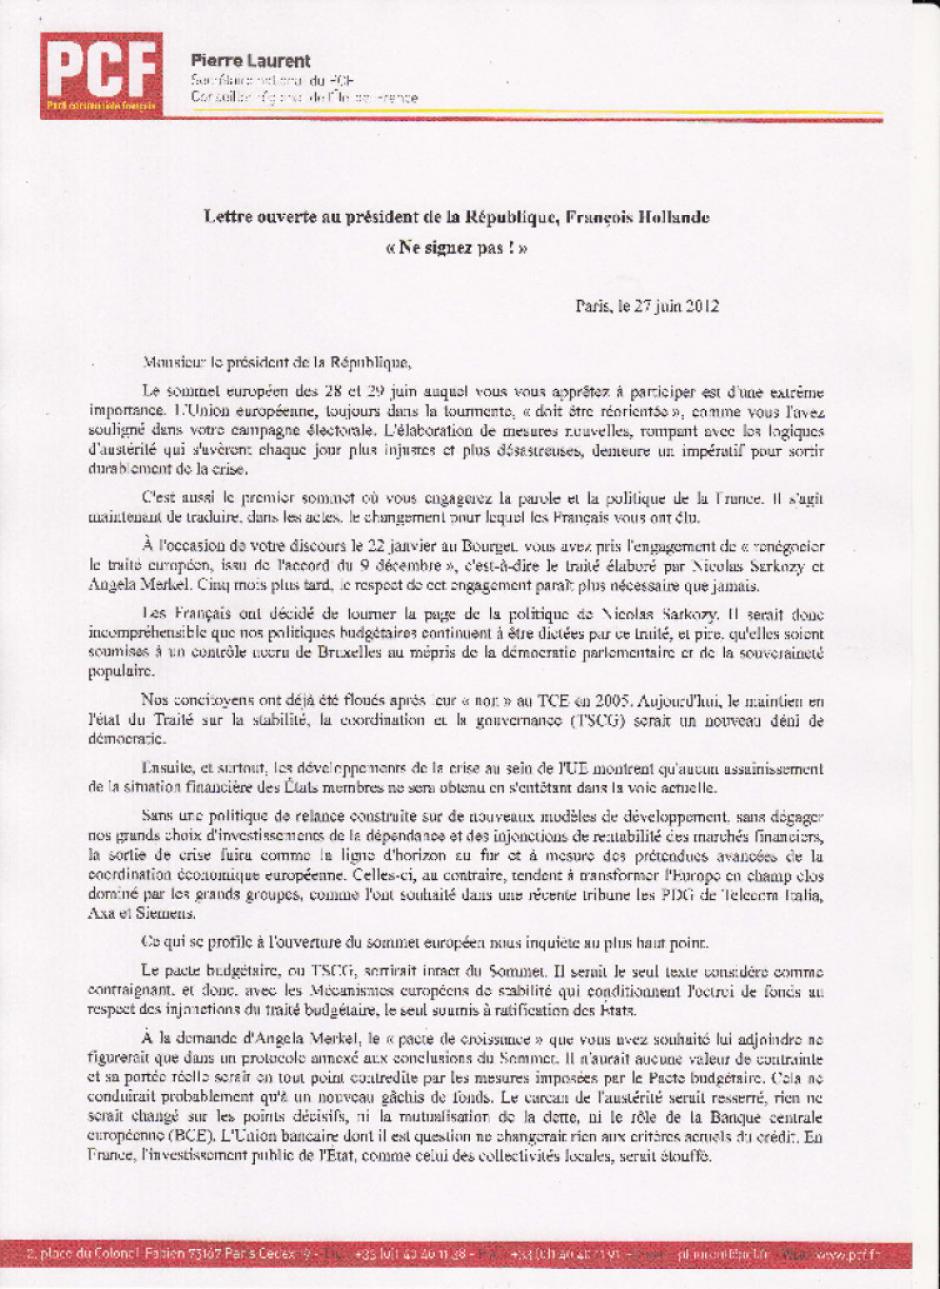 Lettre ouverte à François Hollande « Ne signez pas pour l'austérité ! »